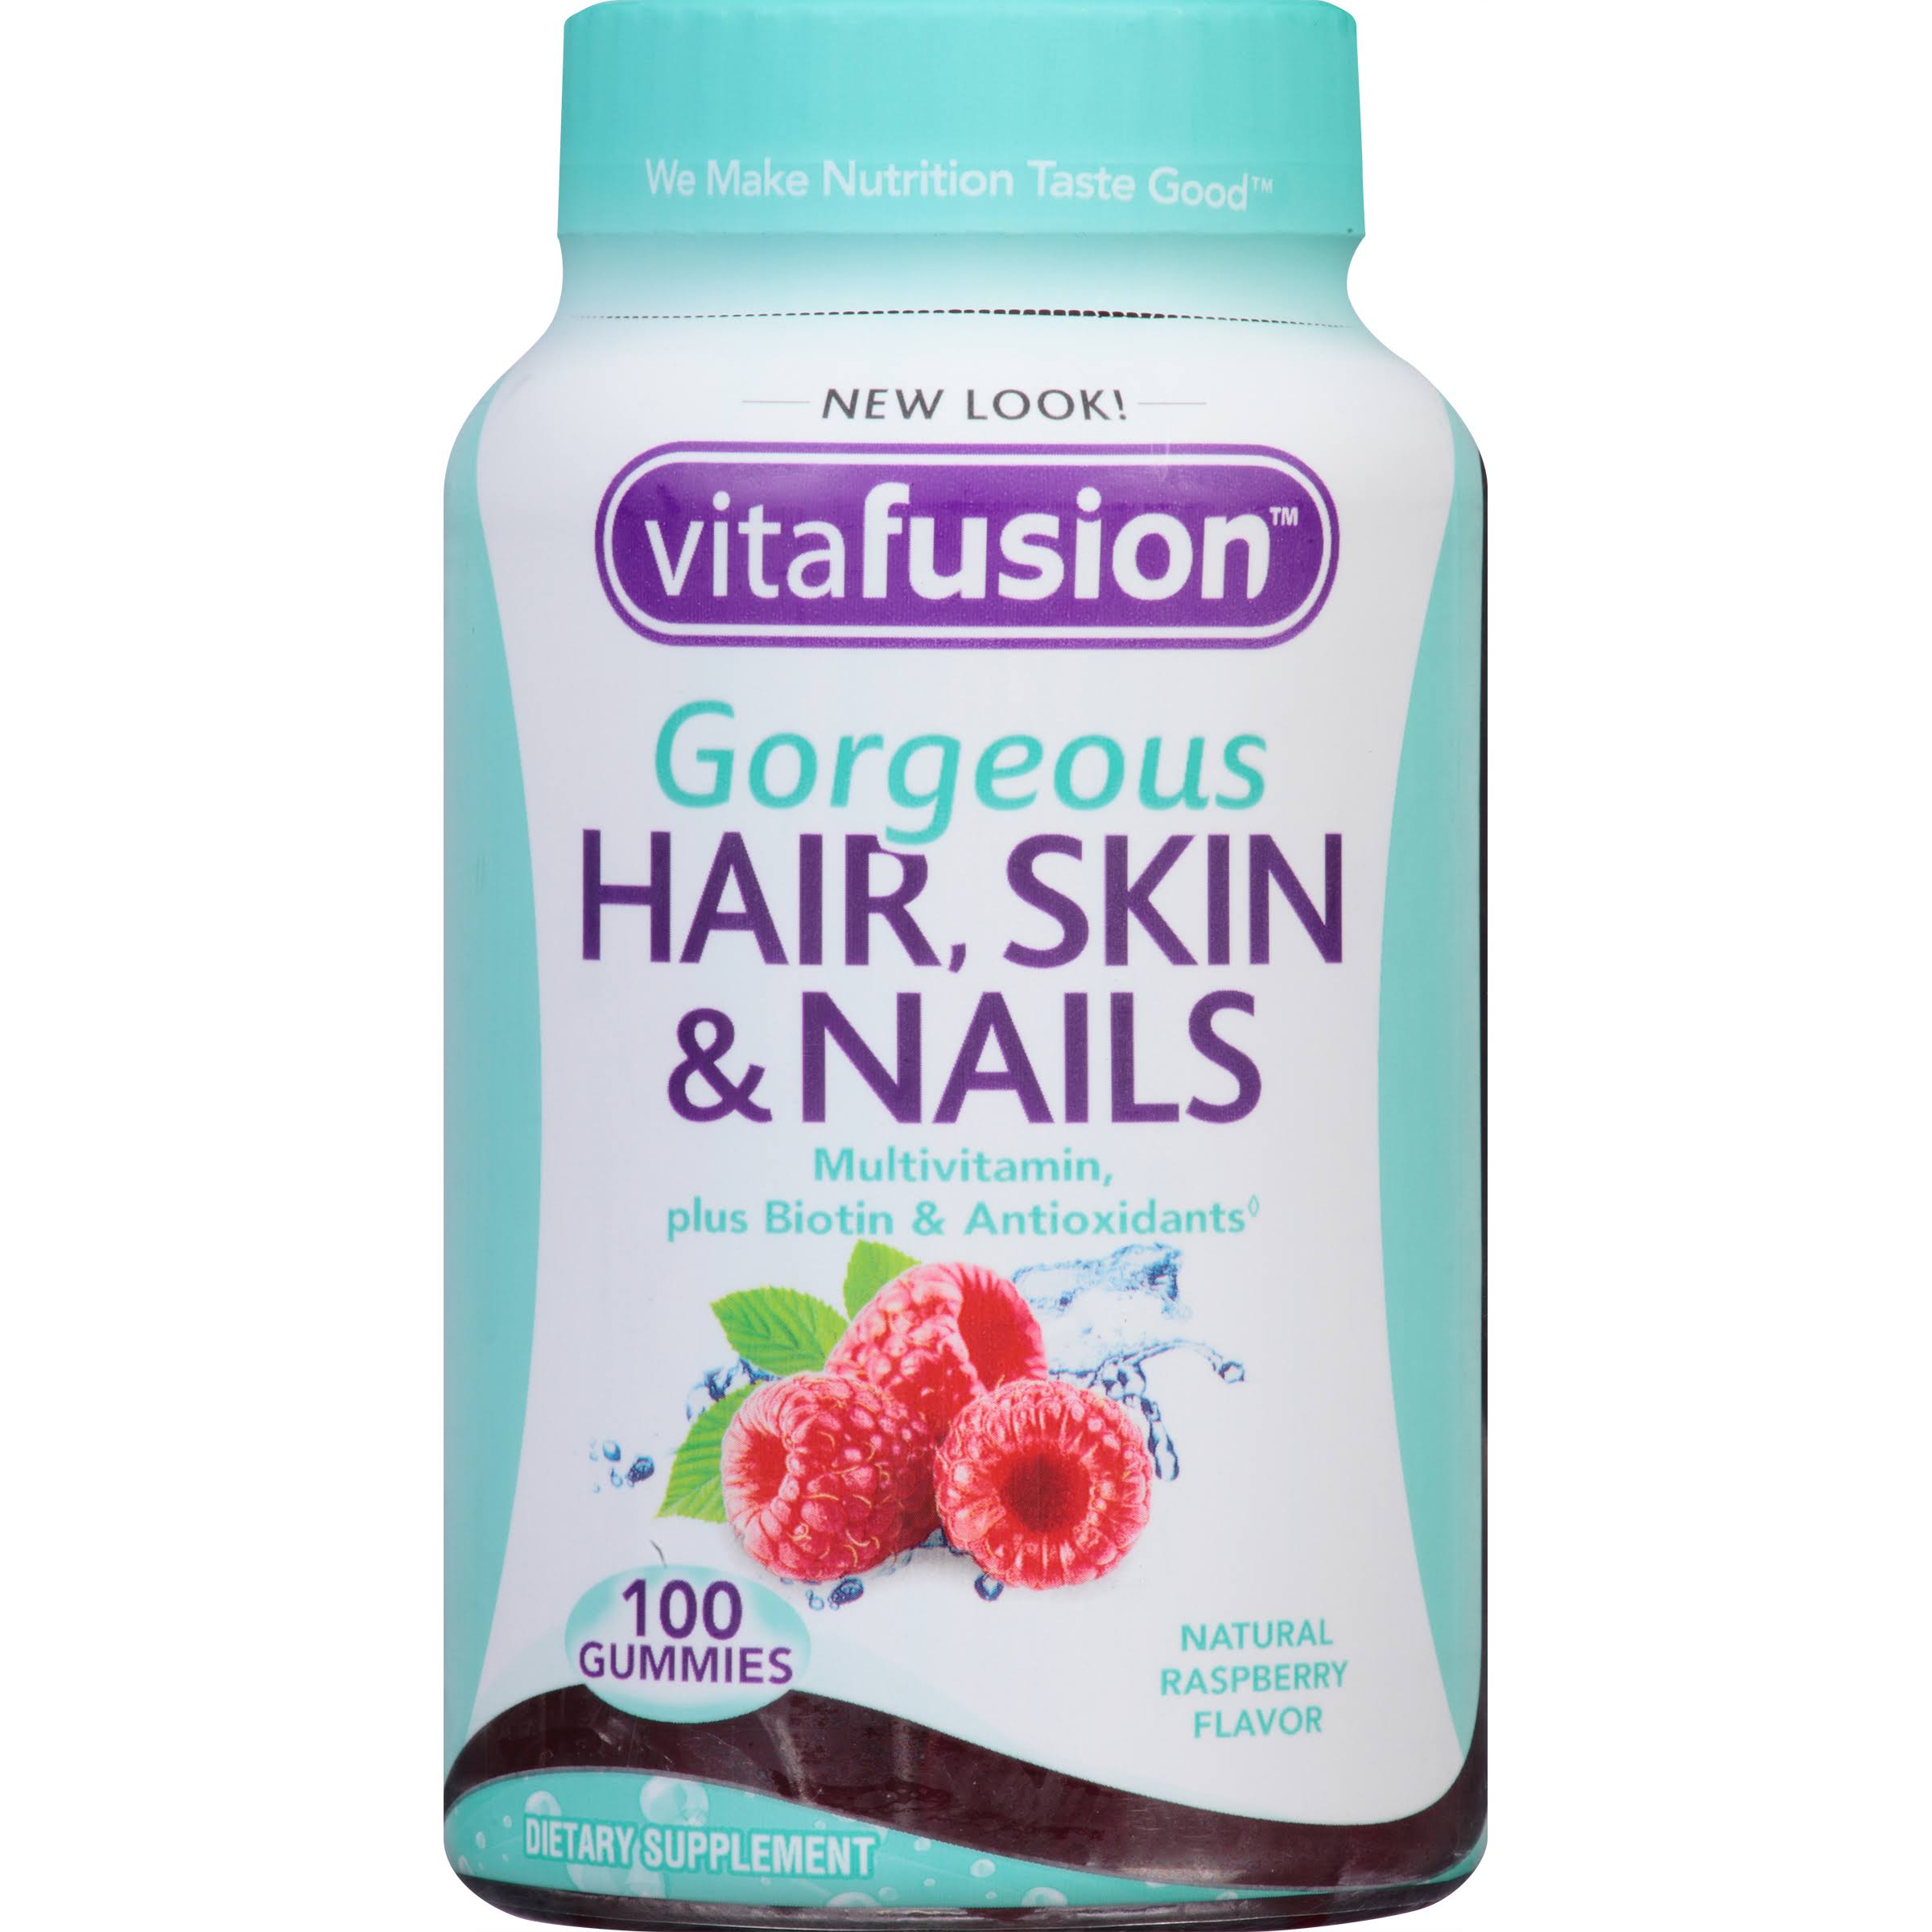 Vitafusion Gorgeous Hair, Skin & Nails Multivitamin - Natural Raspberry, 100 Gummies